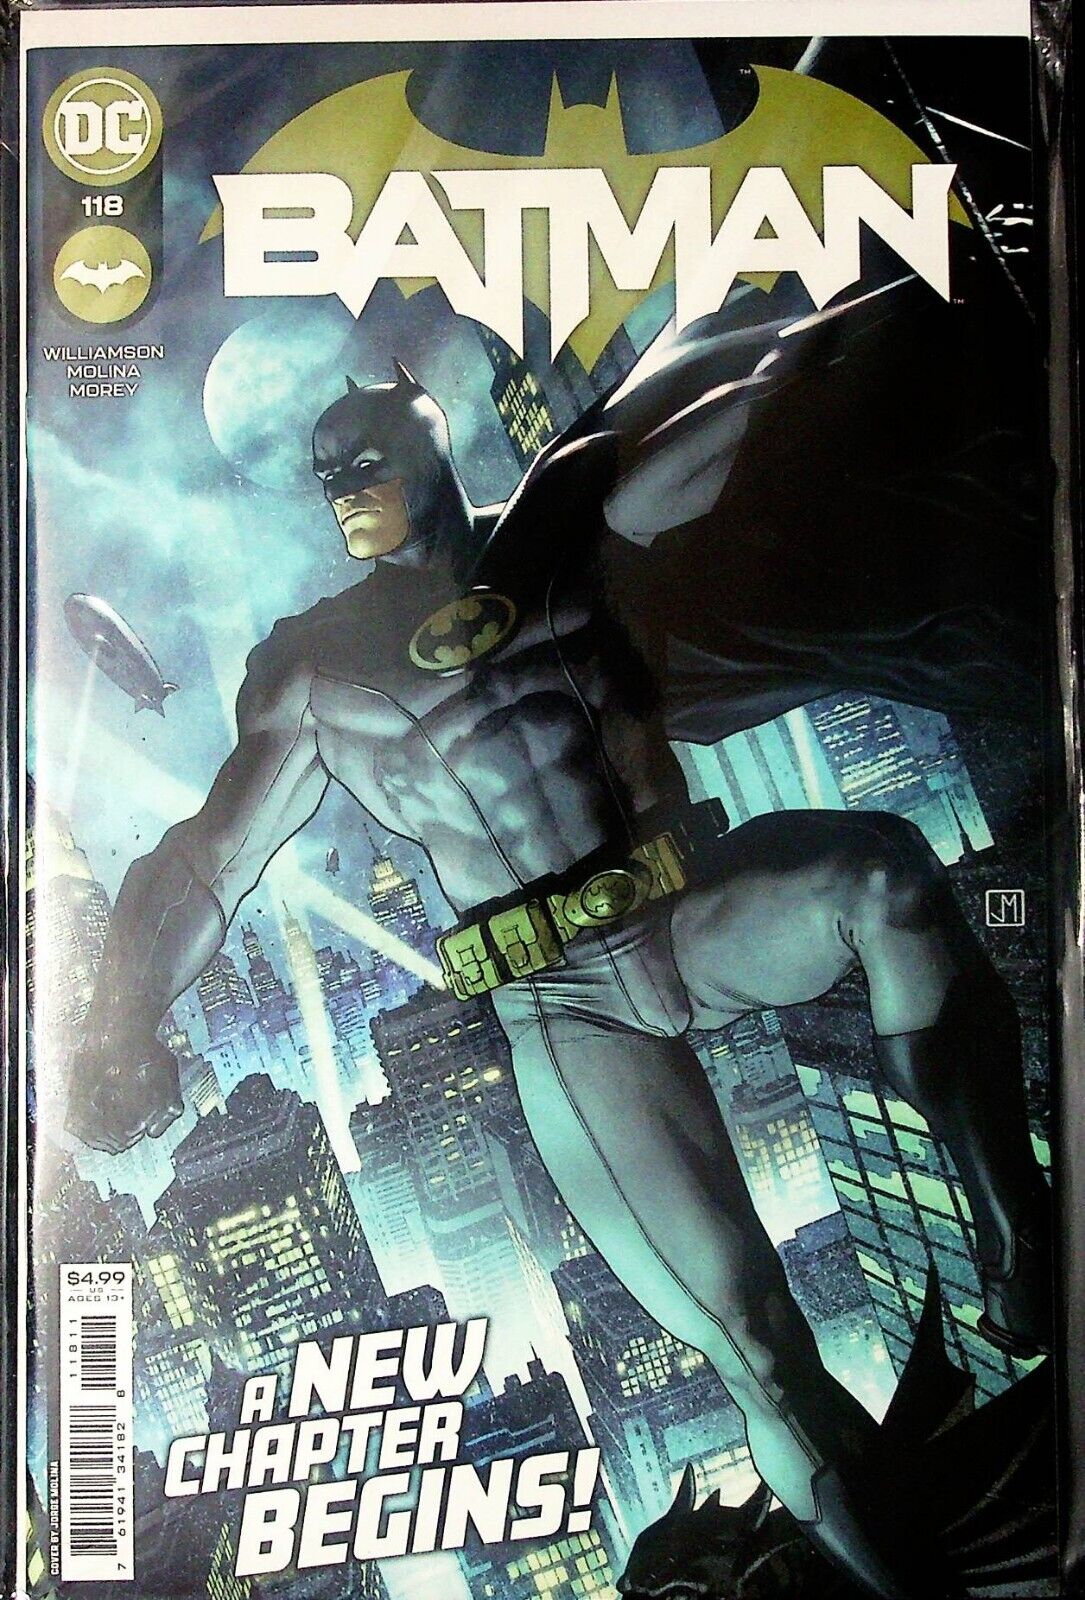 39240: DC Comics BATMAN #118 NM- Grade